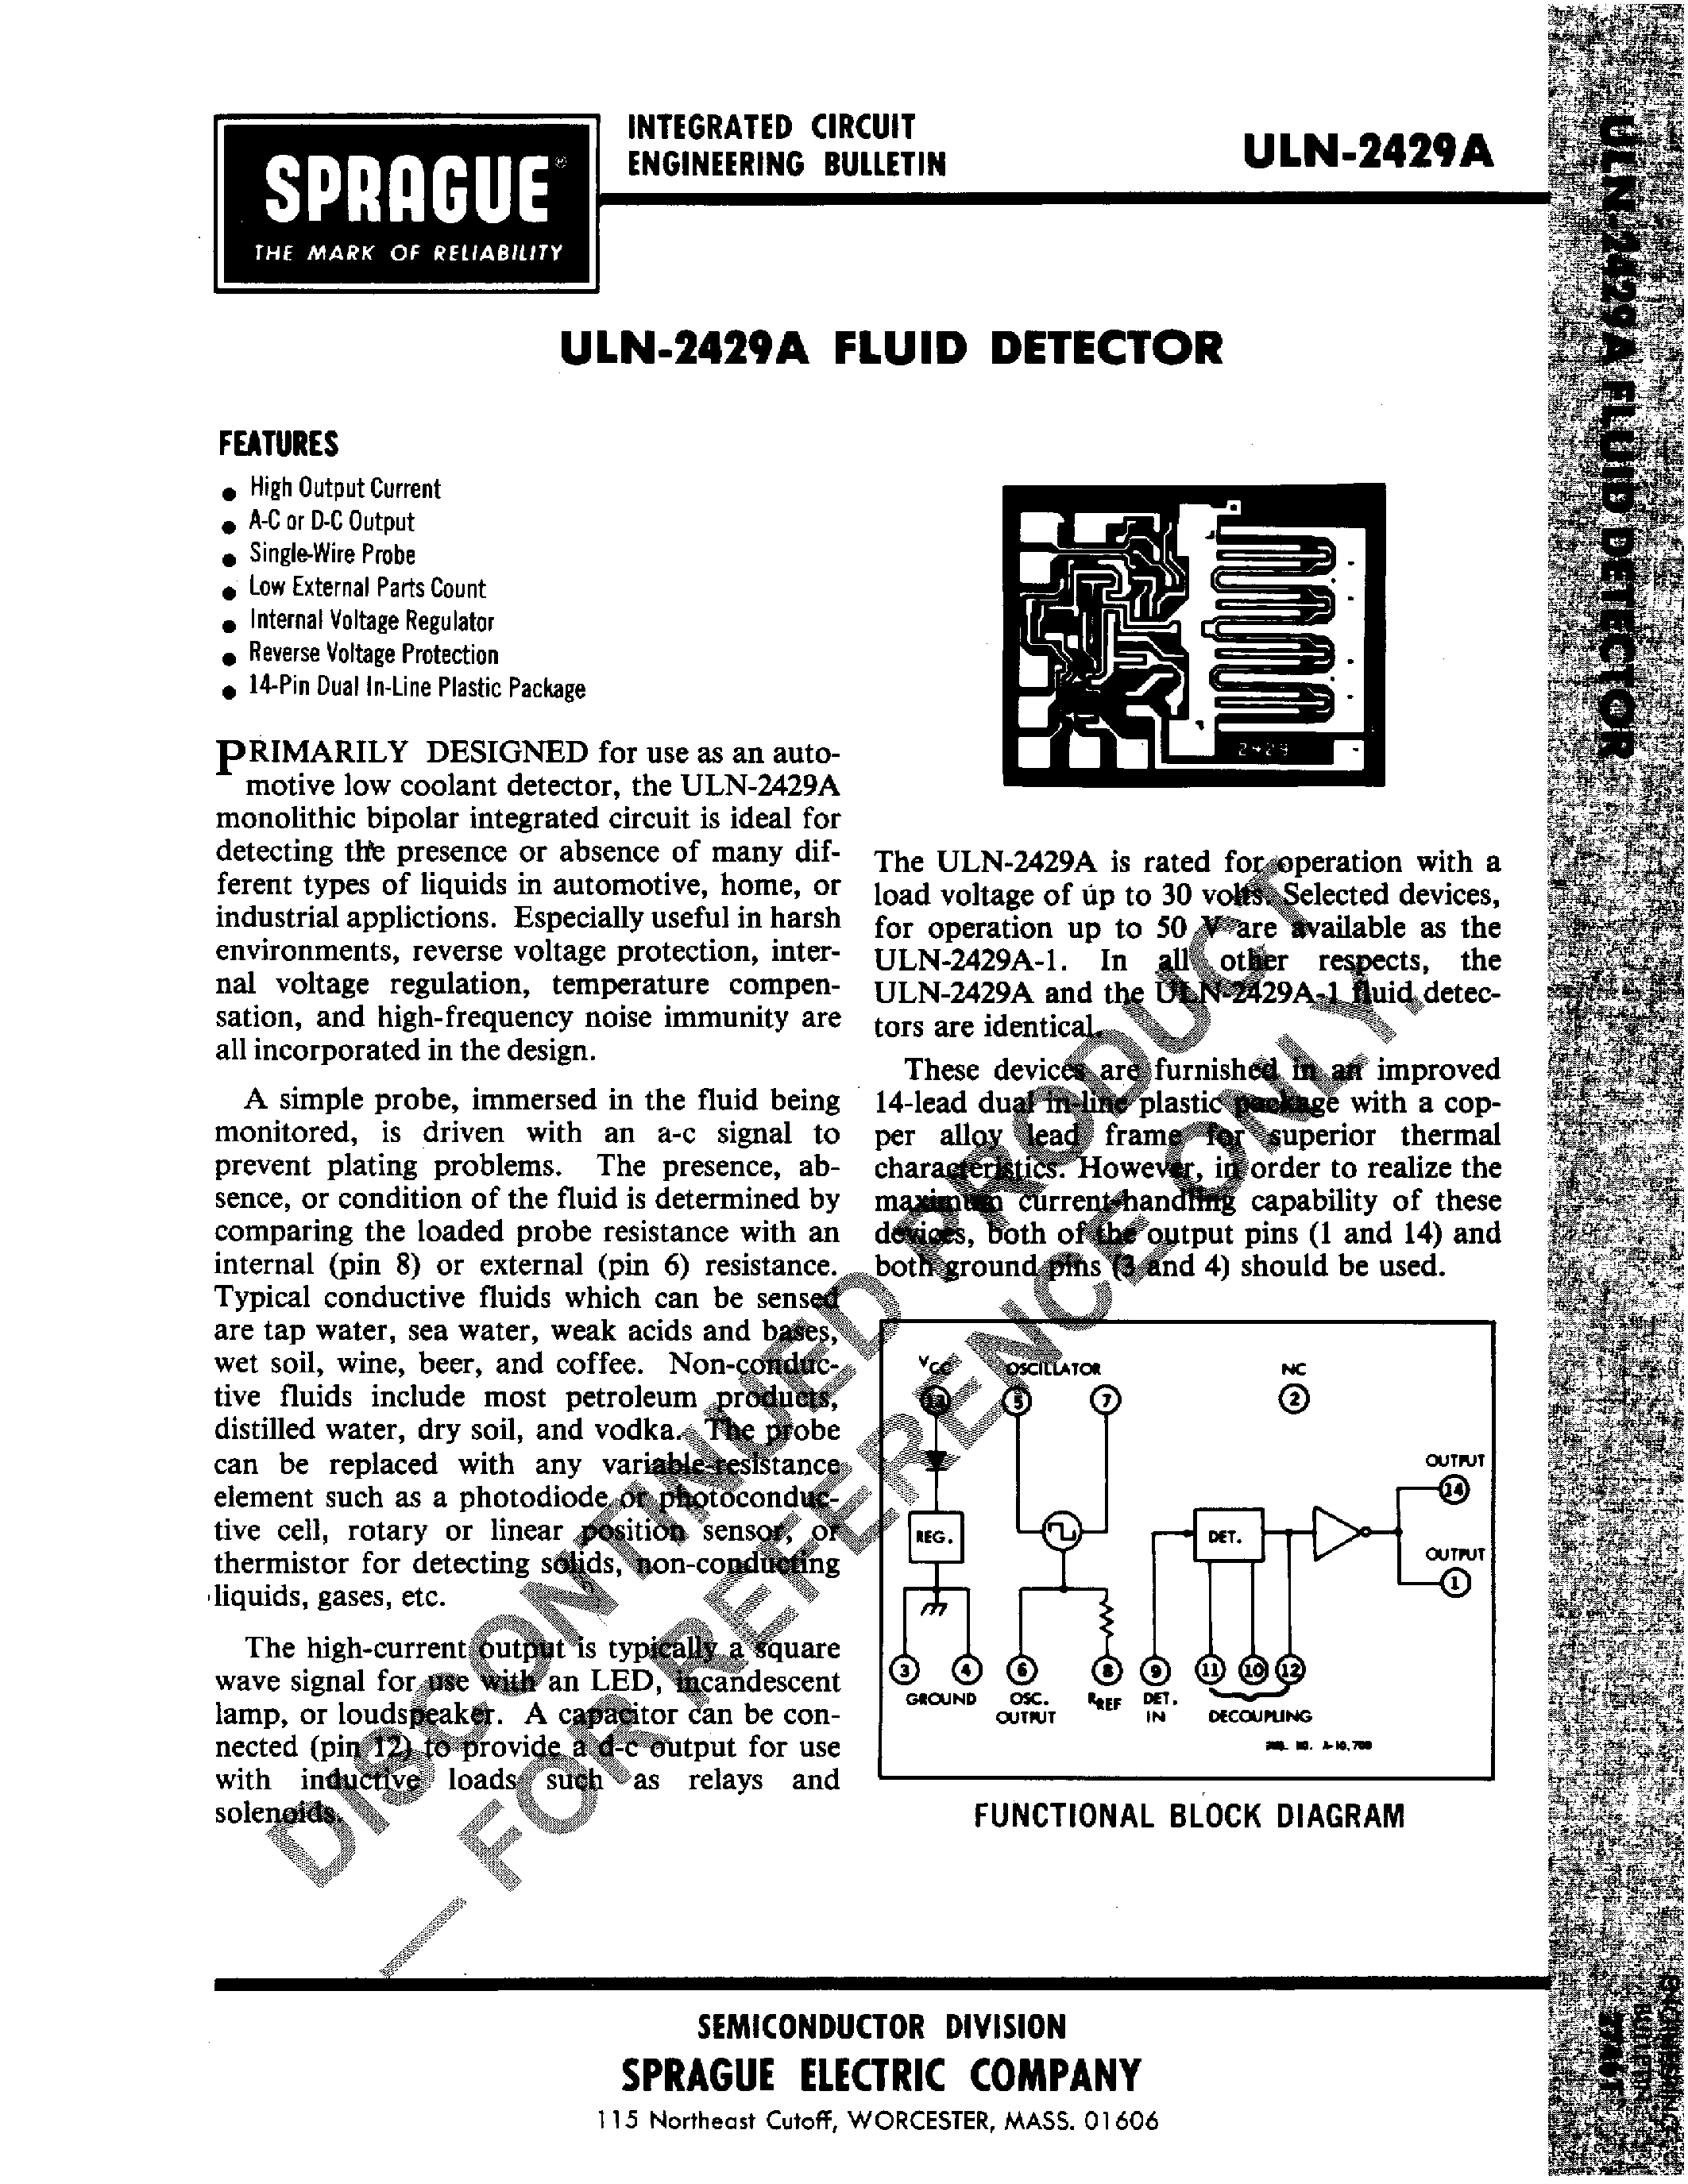 Даташит ULN2429A - Fluid Detector страница 1